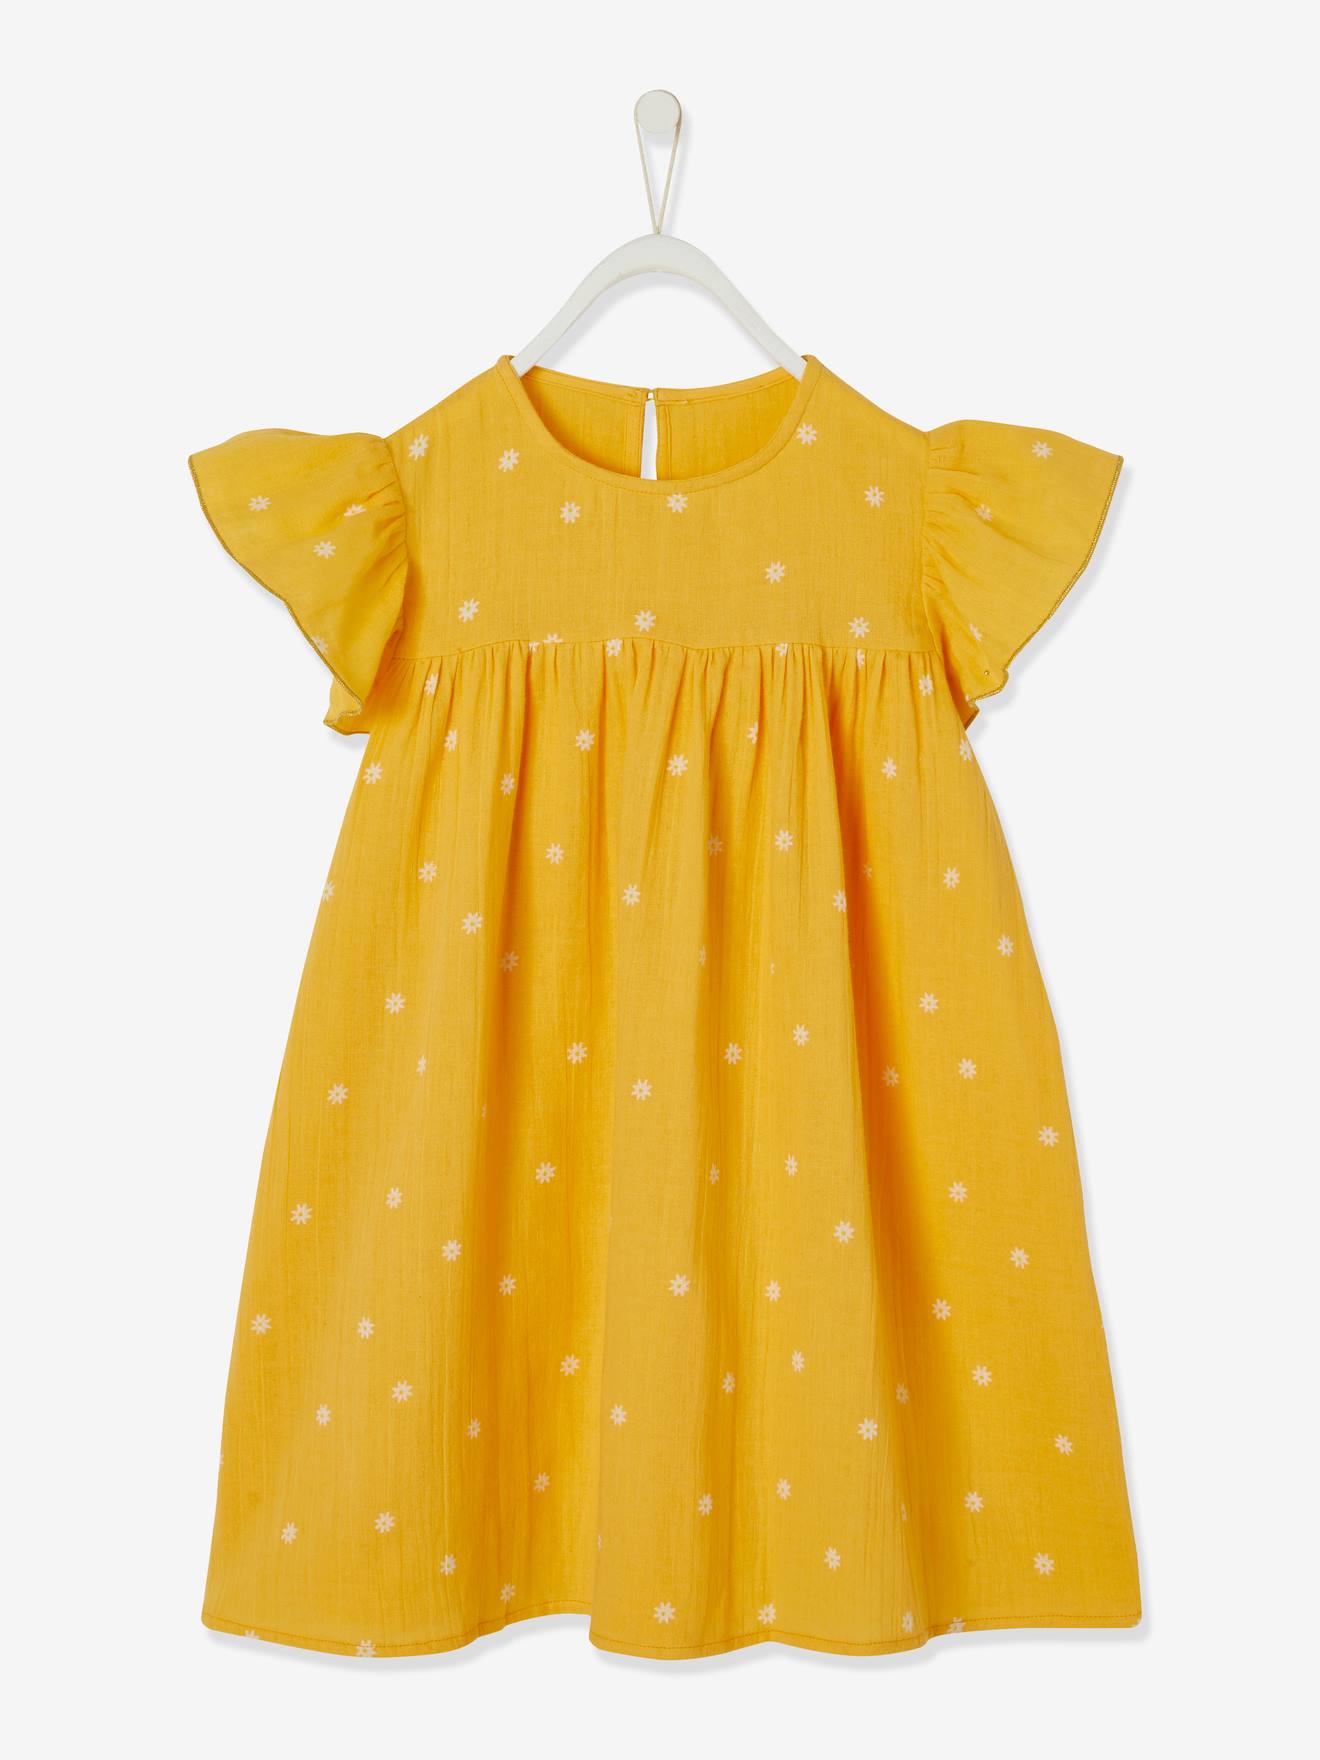 Vestido estampado com mangas borboleta, em gaze de algodão, para menina amarelo escuro estampado